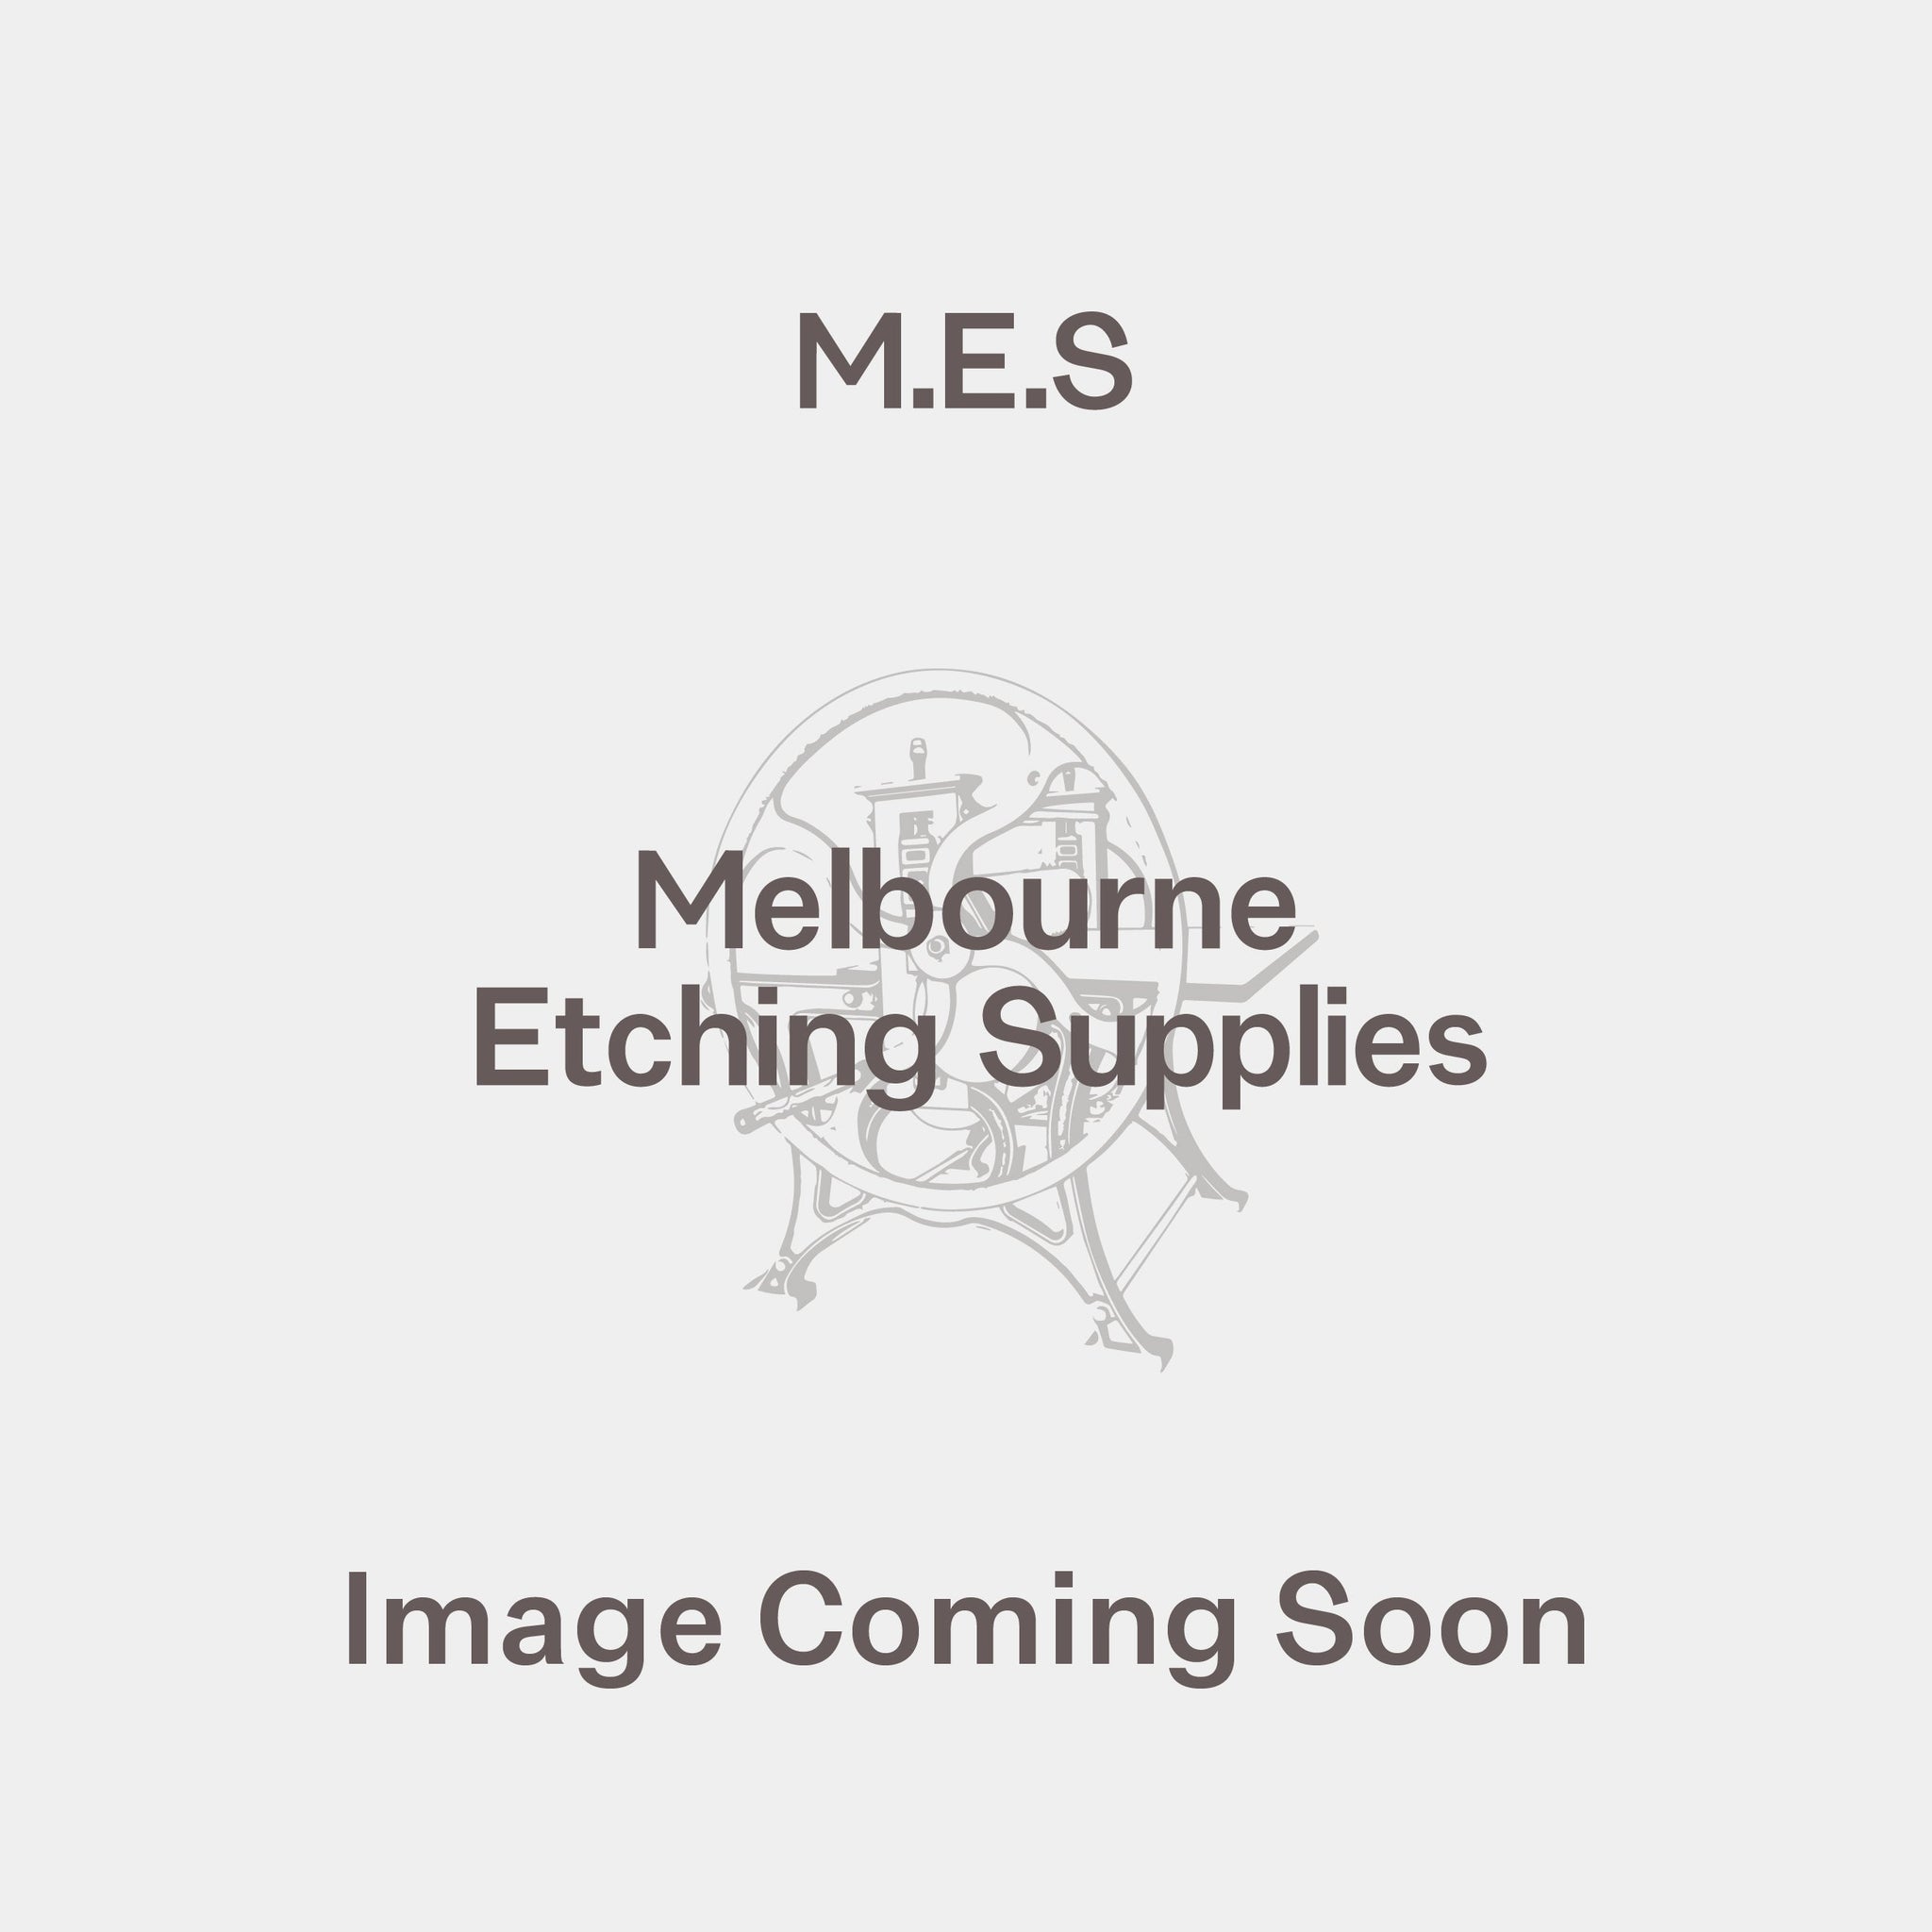 Mizutamashi 16gsm - Melbourne Etching Supplies